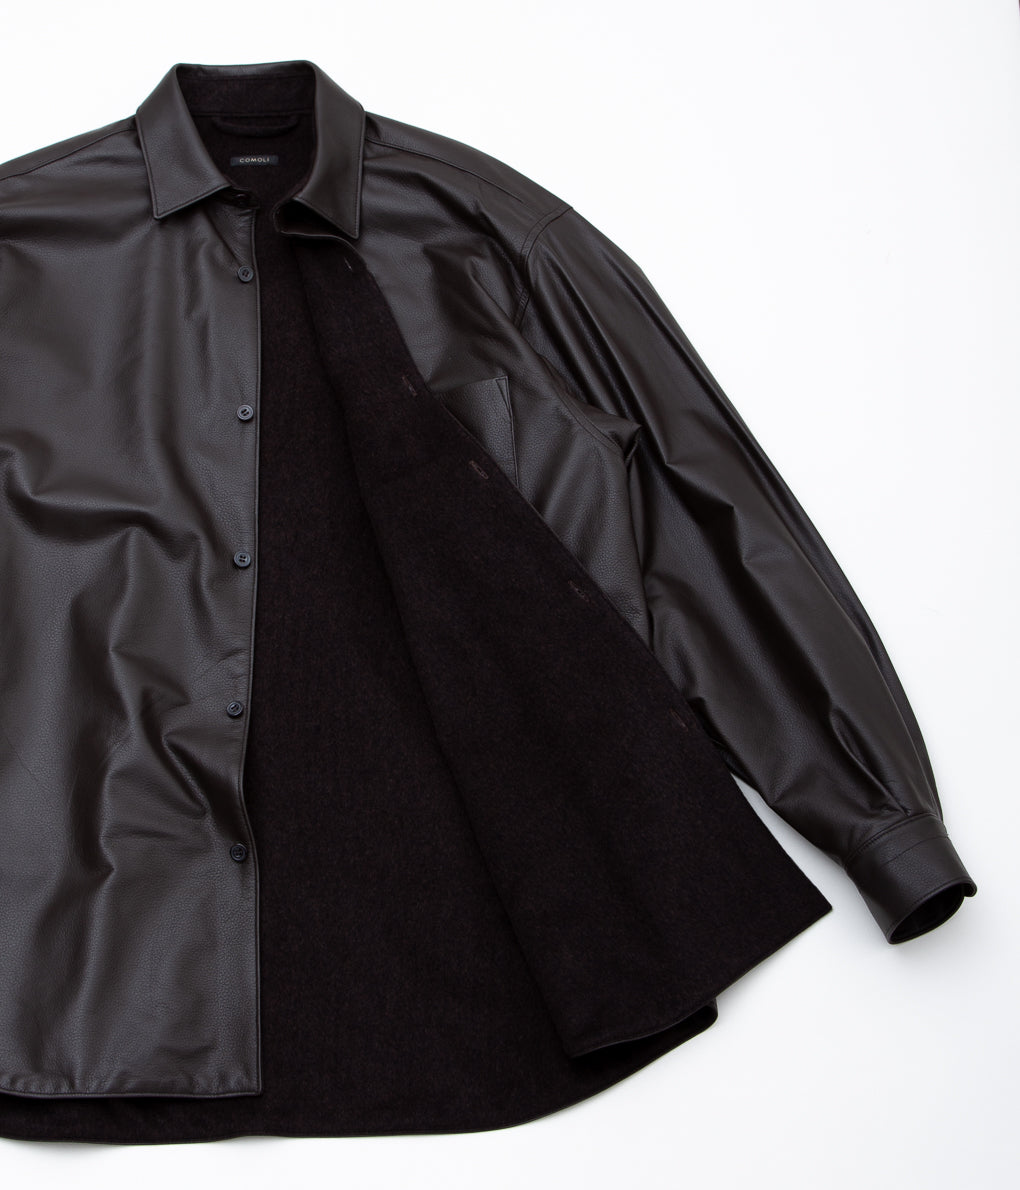 COMOLI "Sheepskin shirt jacket" (BROWN)